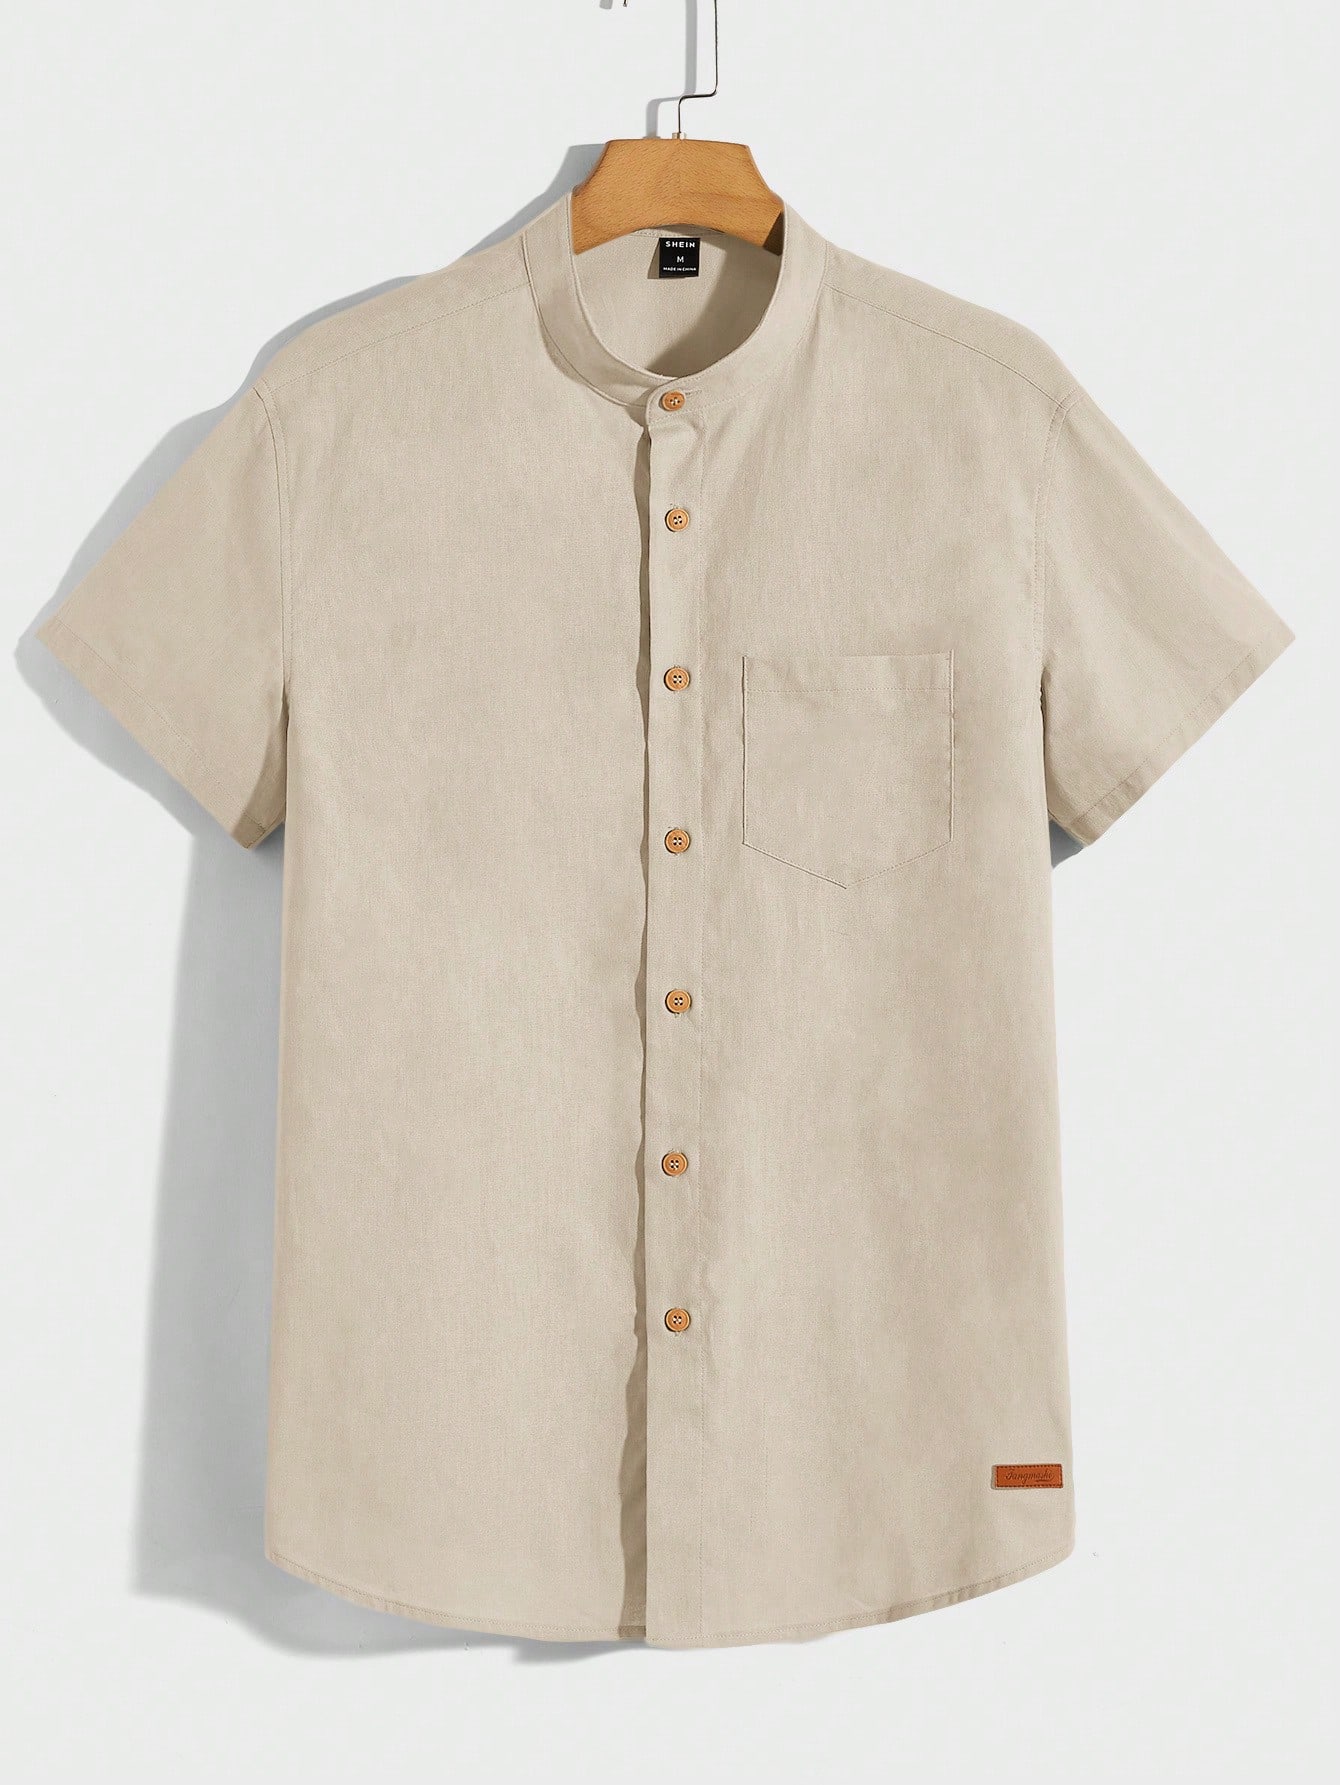 Мужская тканая рубашка Manfinity Homme с карманами, абрикос